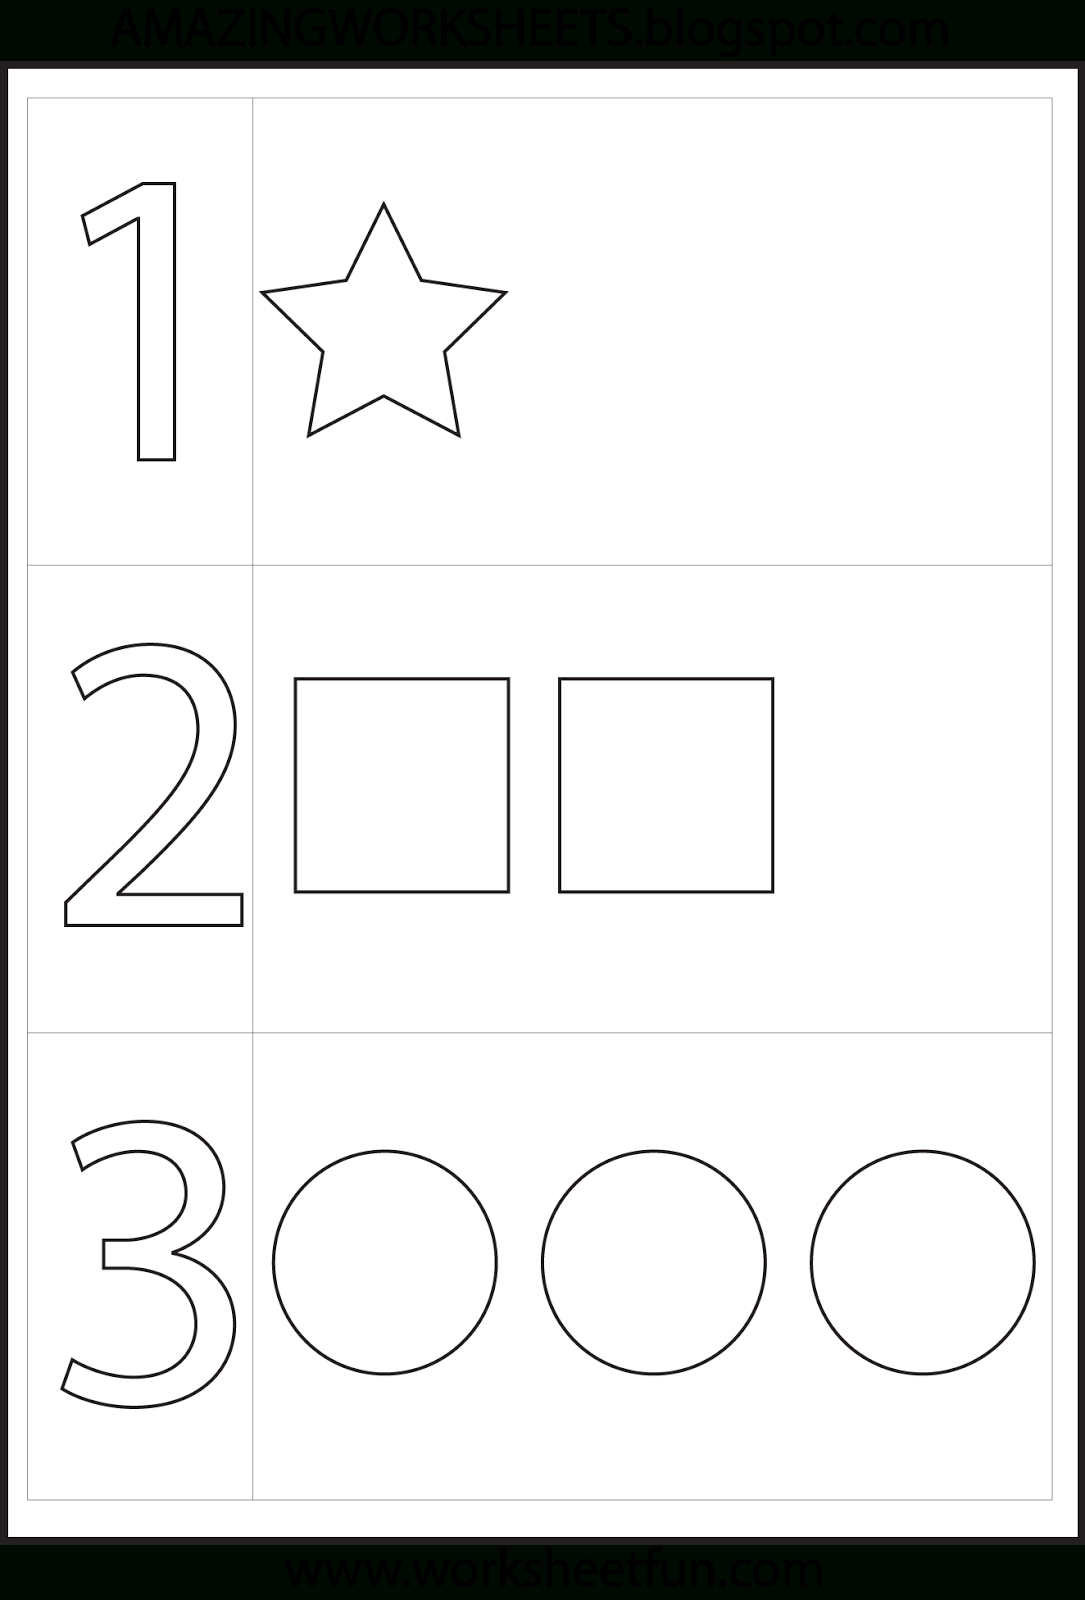 Preschool Number One Worksheet | Number 1 Preschool Worksheets | Number One Worksheet Preschool Printable Activities